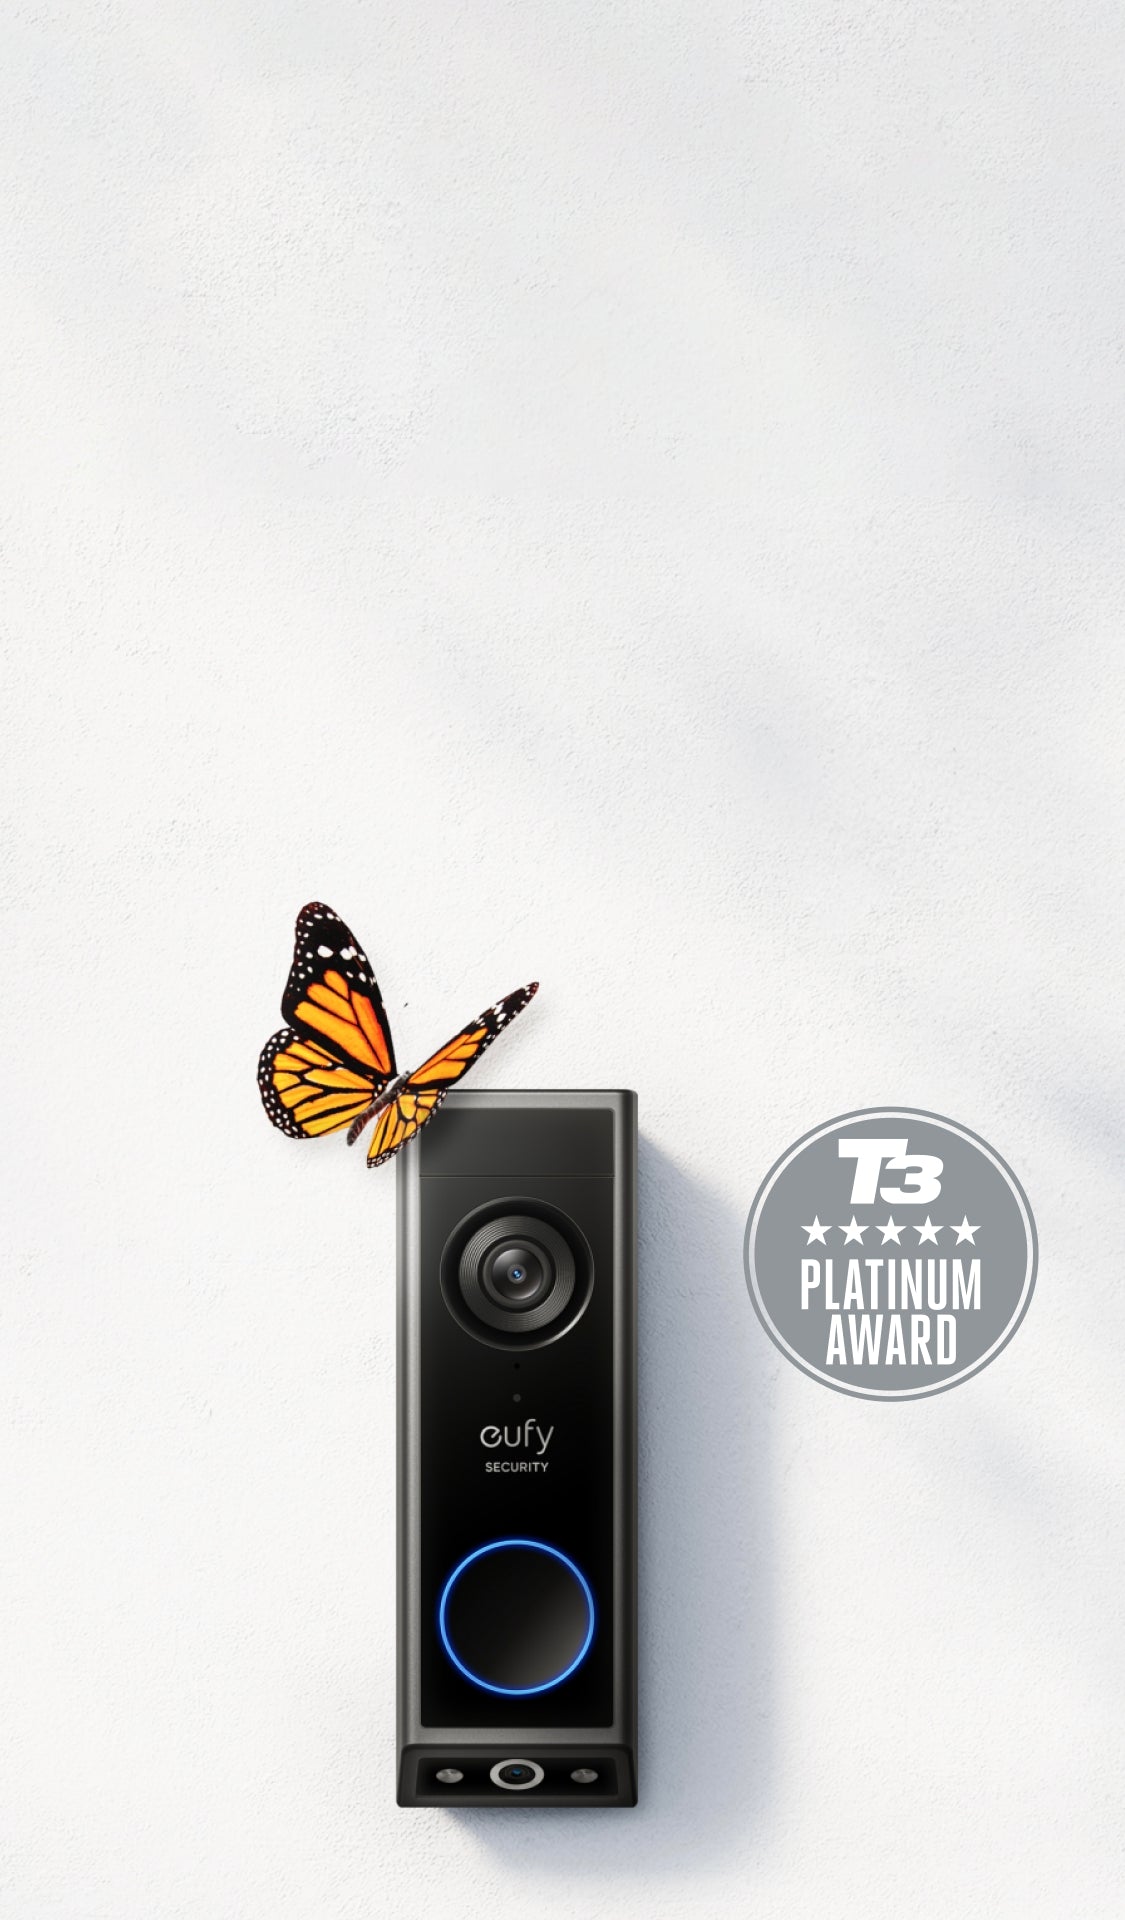 Video Doorbell E340 (Battery Powered)